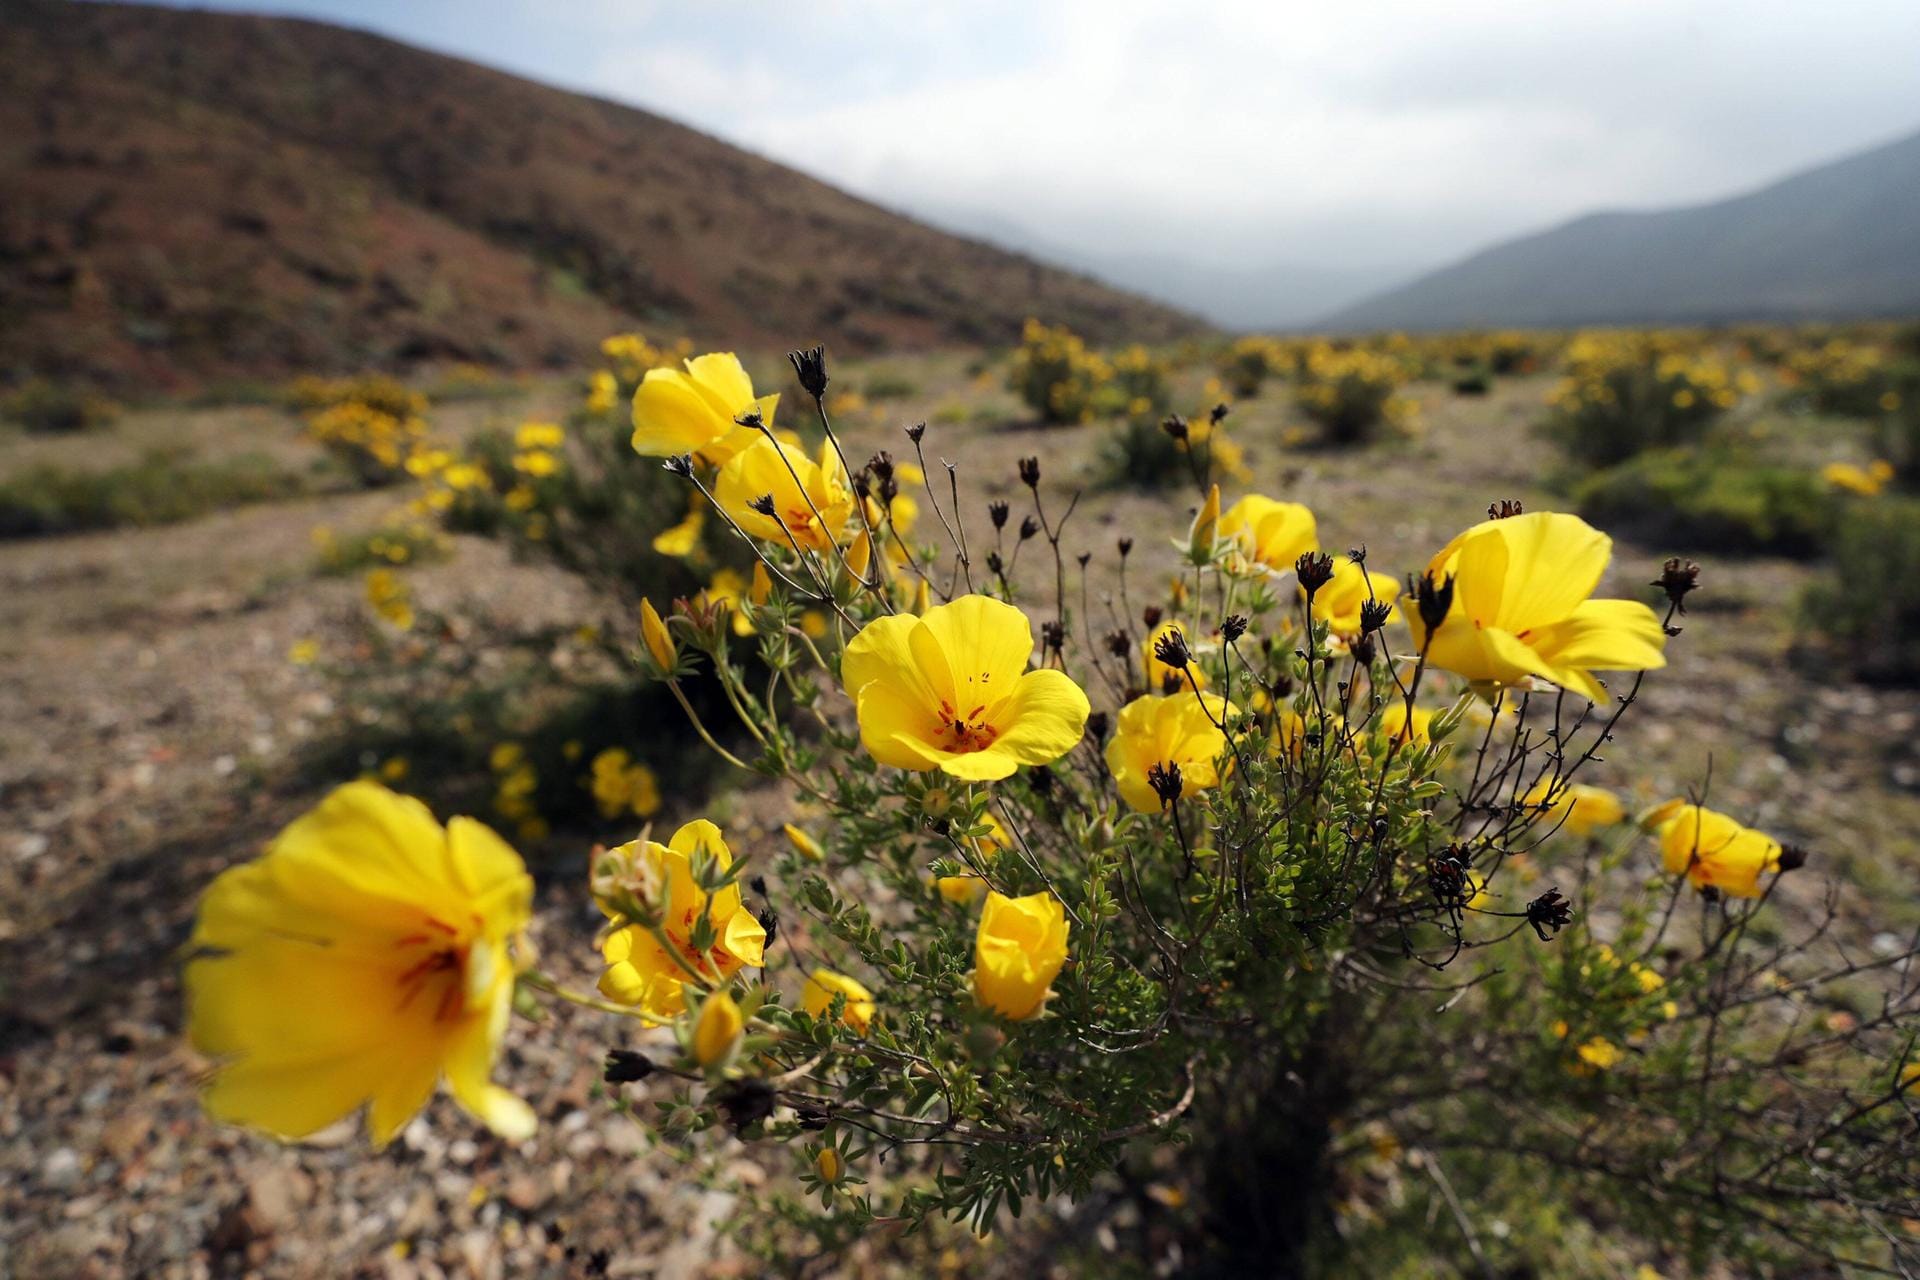 2017 blüht die Wüste besonders spektakulär. Das zumindest schätzen Experten der chilenischen Forstbehörde.